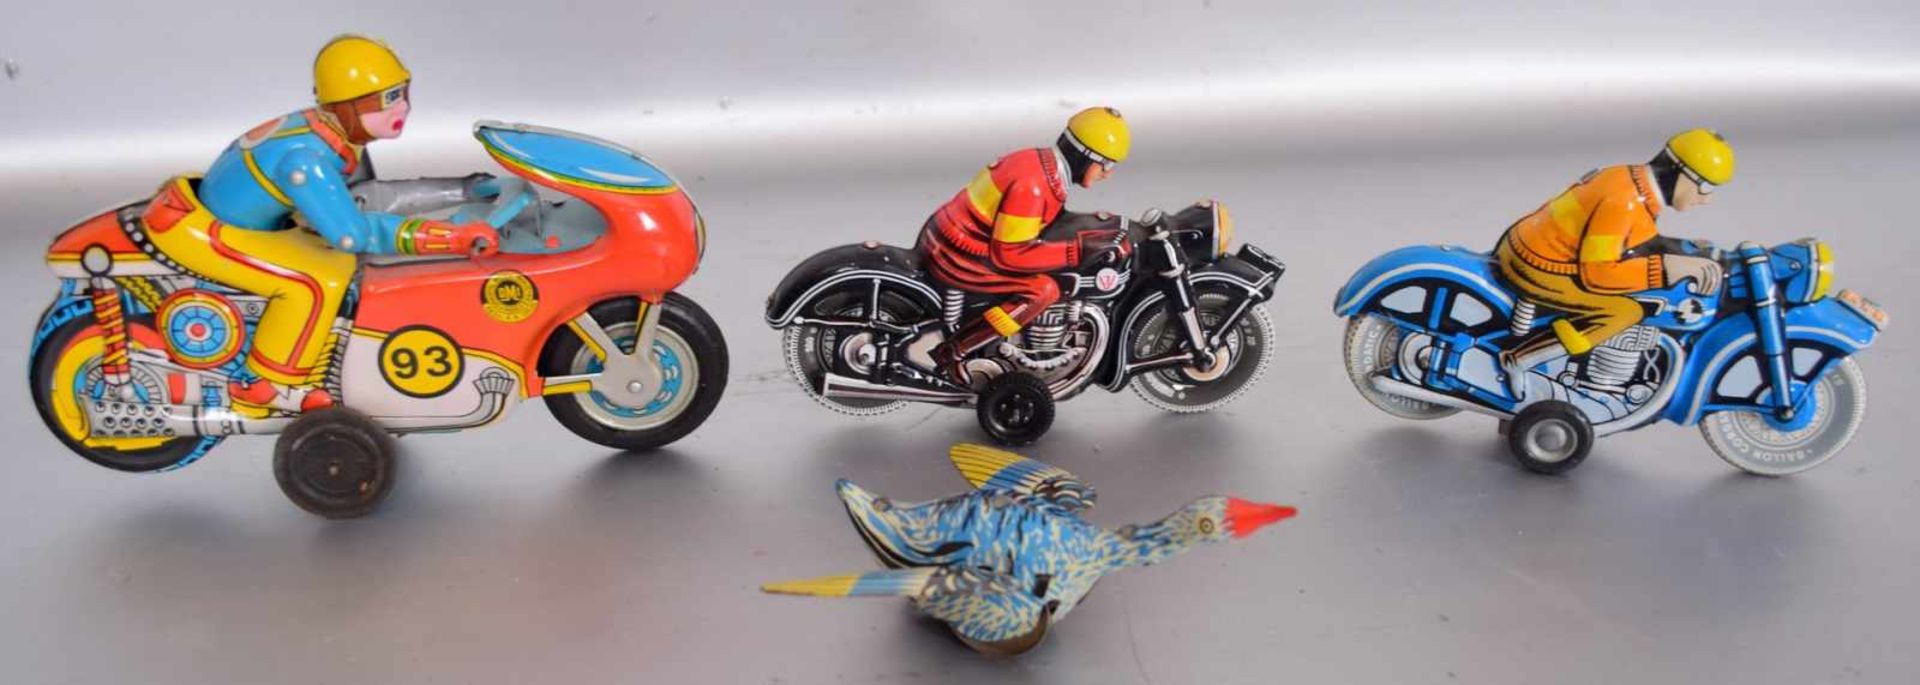 Konvolut BlechspielzeugBlech, bunt bemalt, drei Motorräder und eine Ente, mit Schwungfeder, H 13 cm,